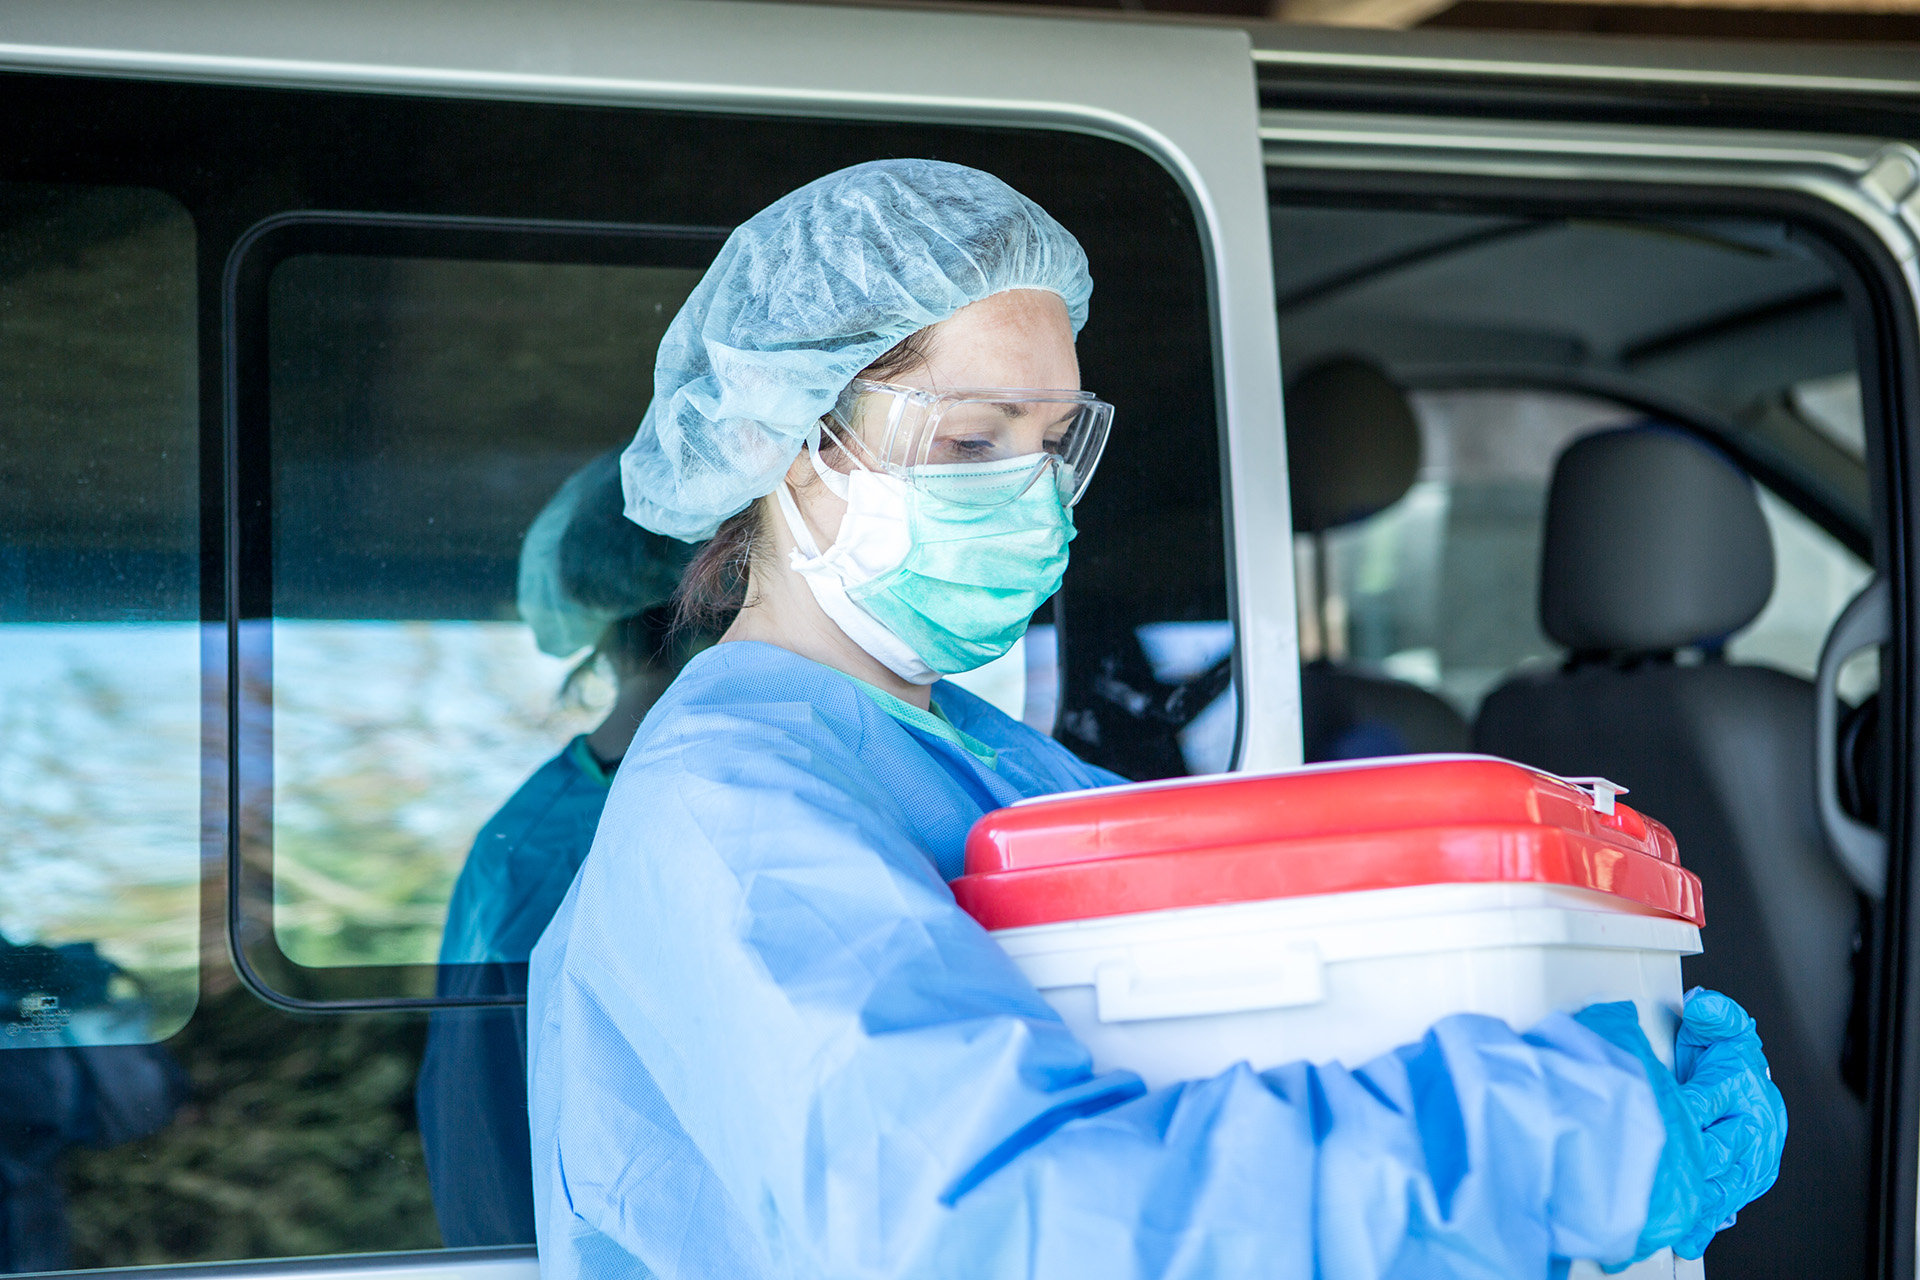 La ministra de Salud resaltó que en las donaciones de órganos "hemos recuperado los niveles previos a la pandemia"